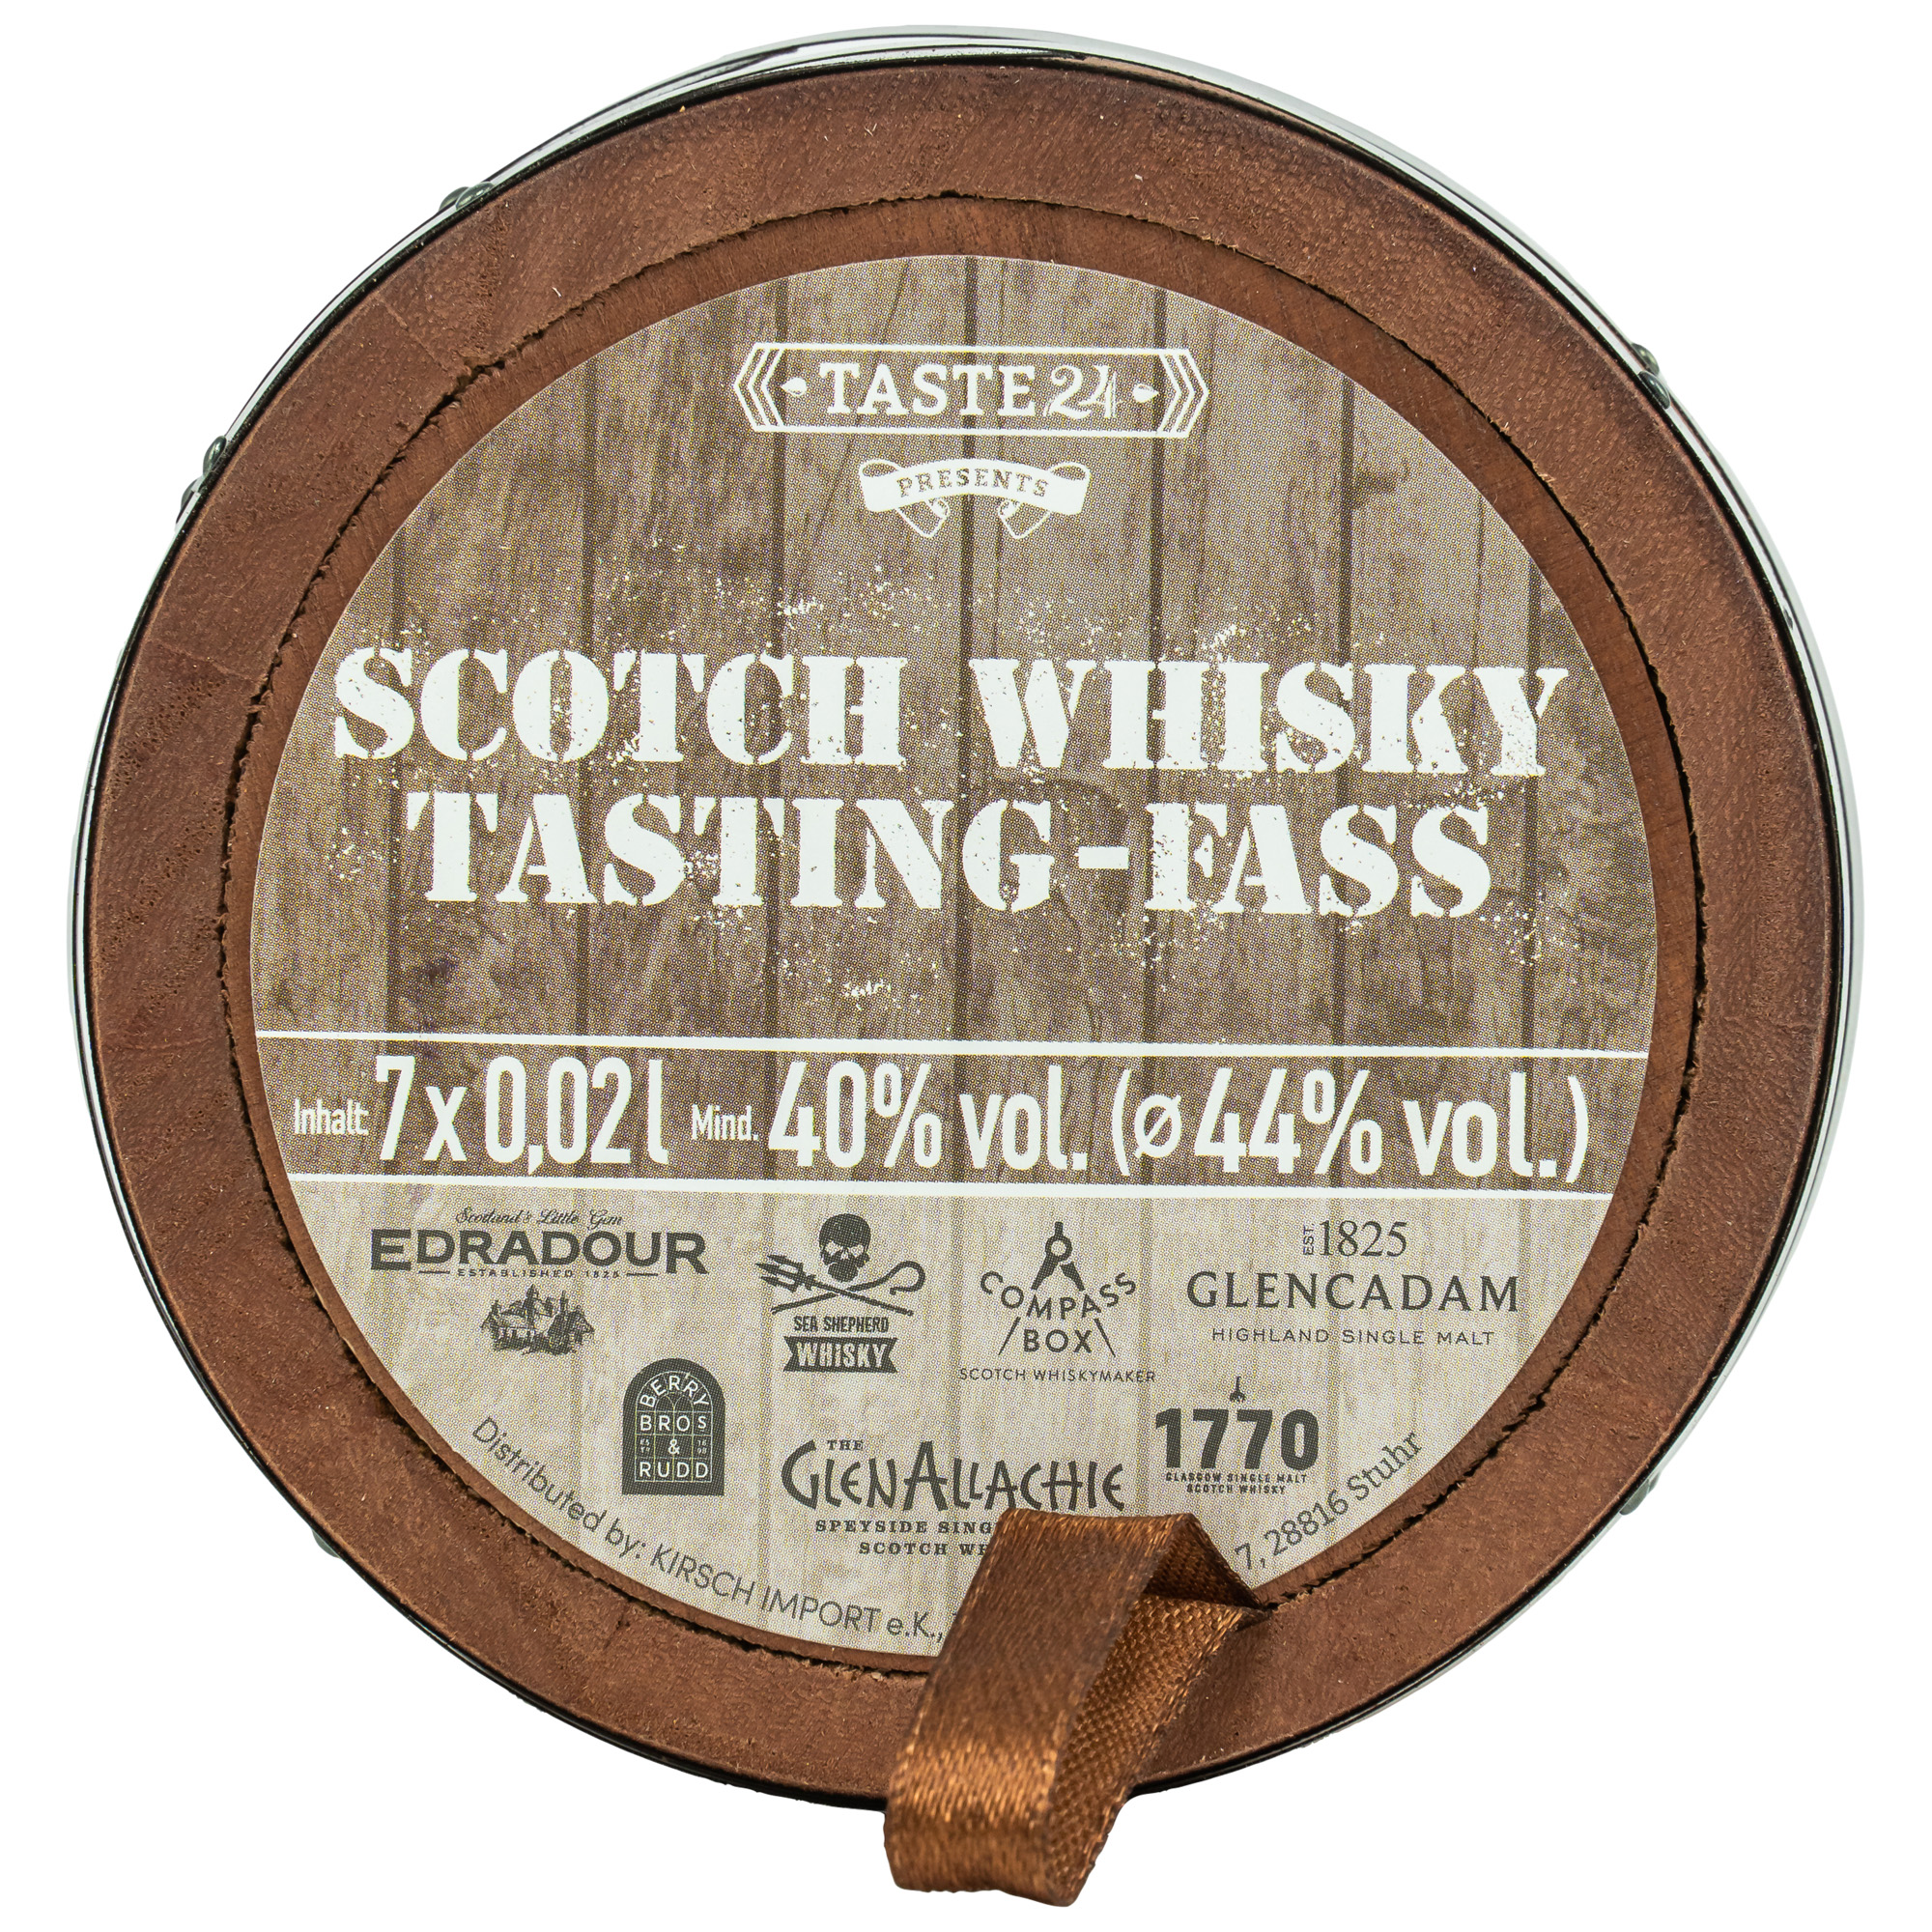 Scotch Whisky Tasting-Fass 7x0,02l 44%vol.